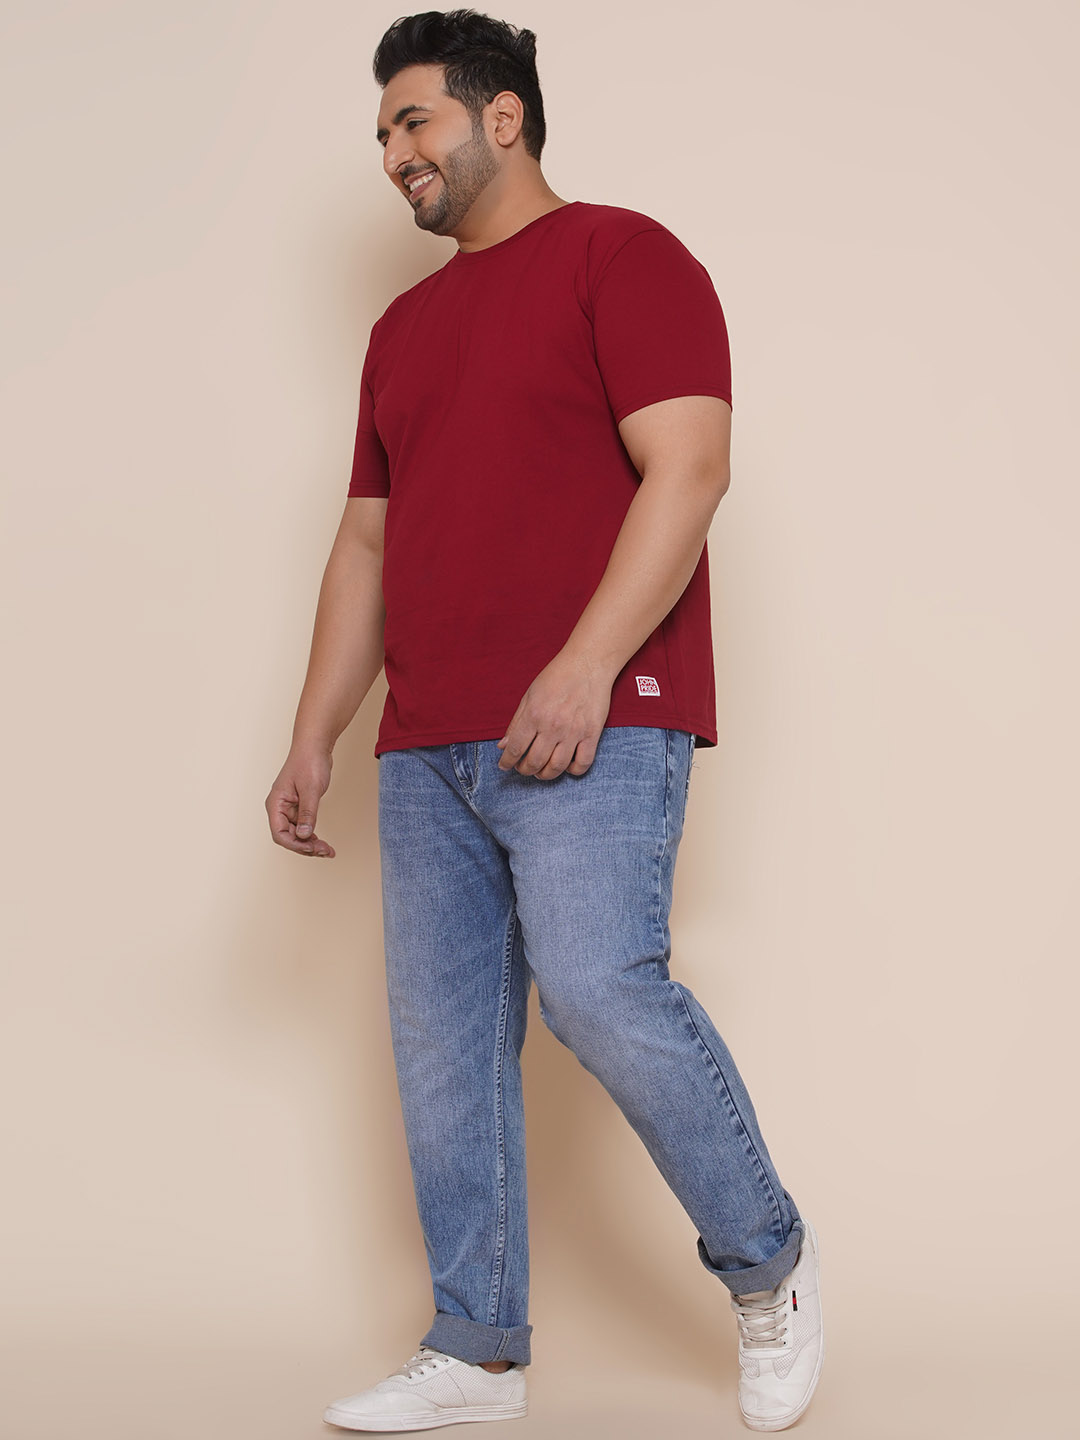 bottomwear/jeans/JPJ27001/jpj27001-6.jpg